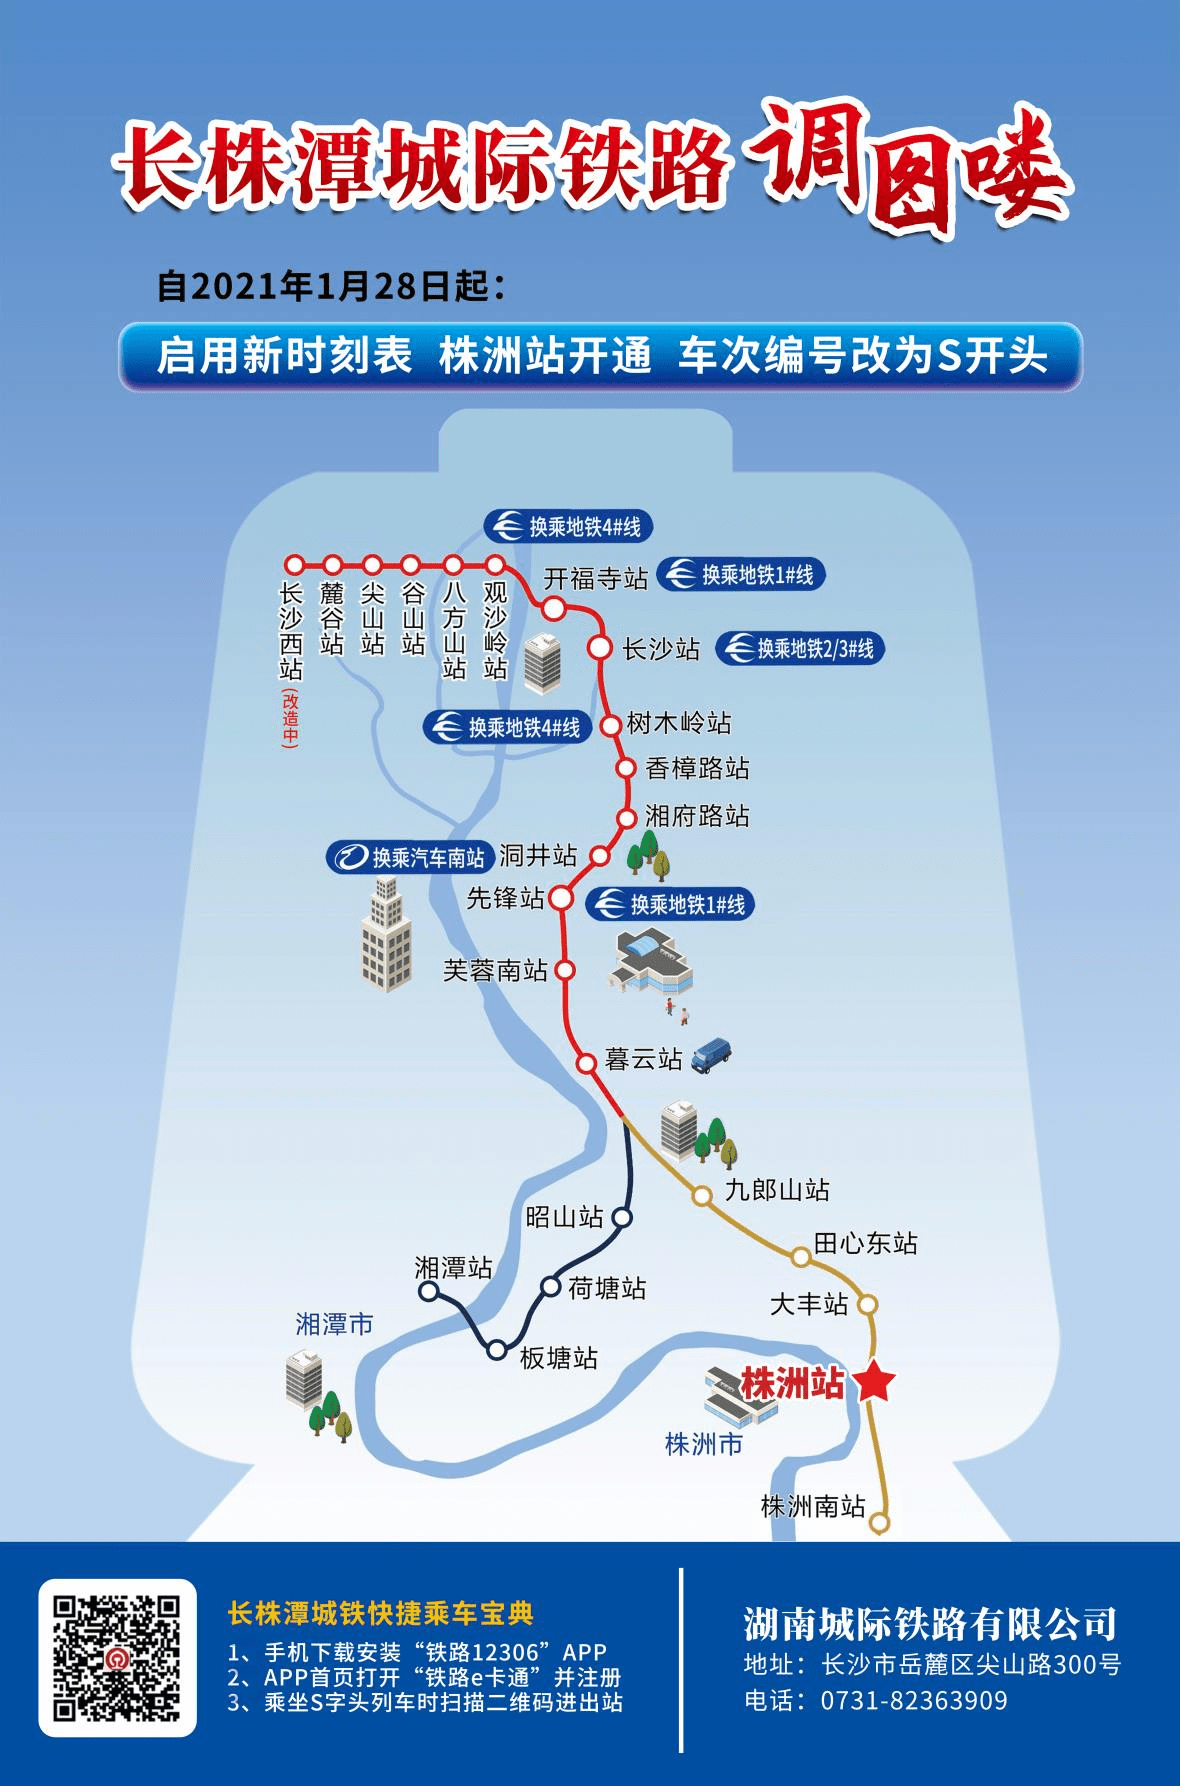 株洲火车站将首次开办城际客运业务长株潭城际铁路同步启用新的列车